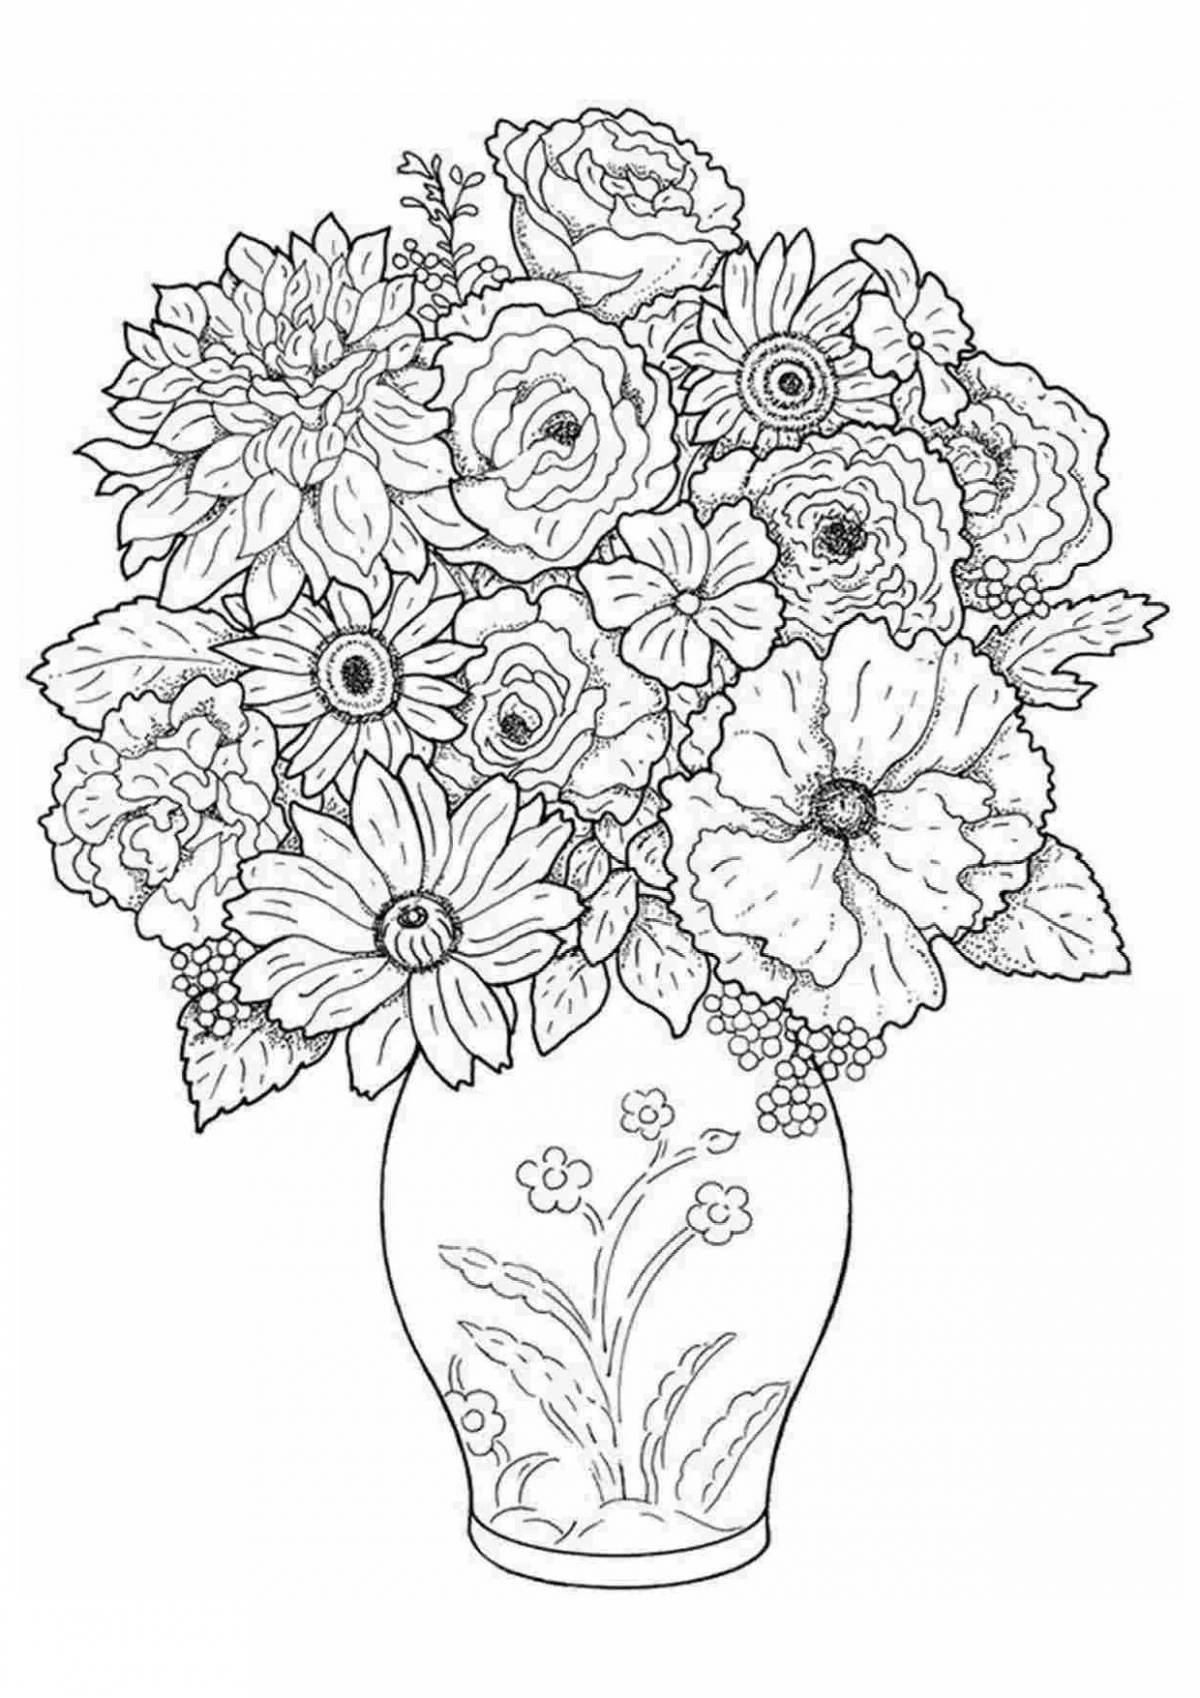 Раскраска величественные большие цветы в вазе